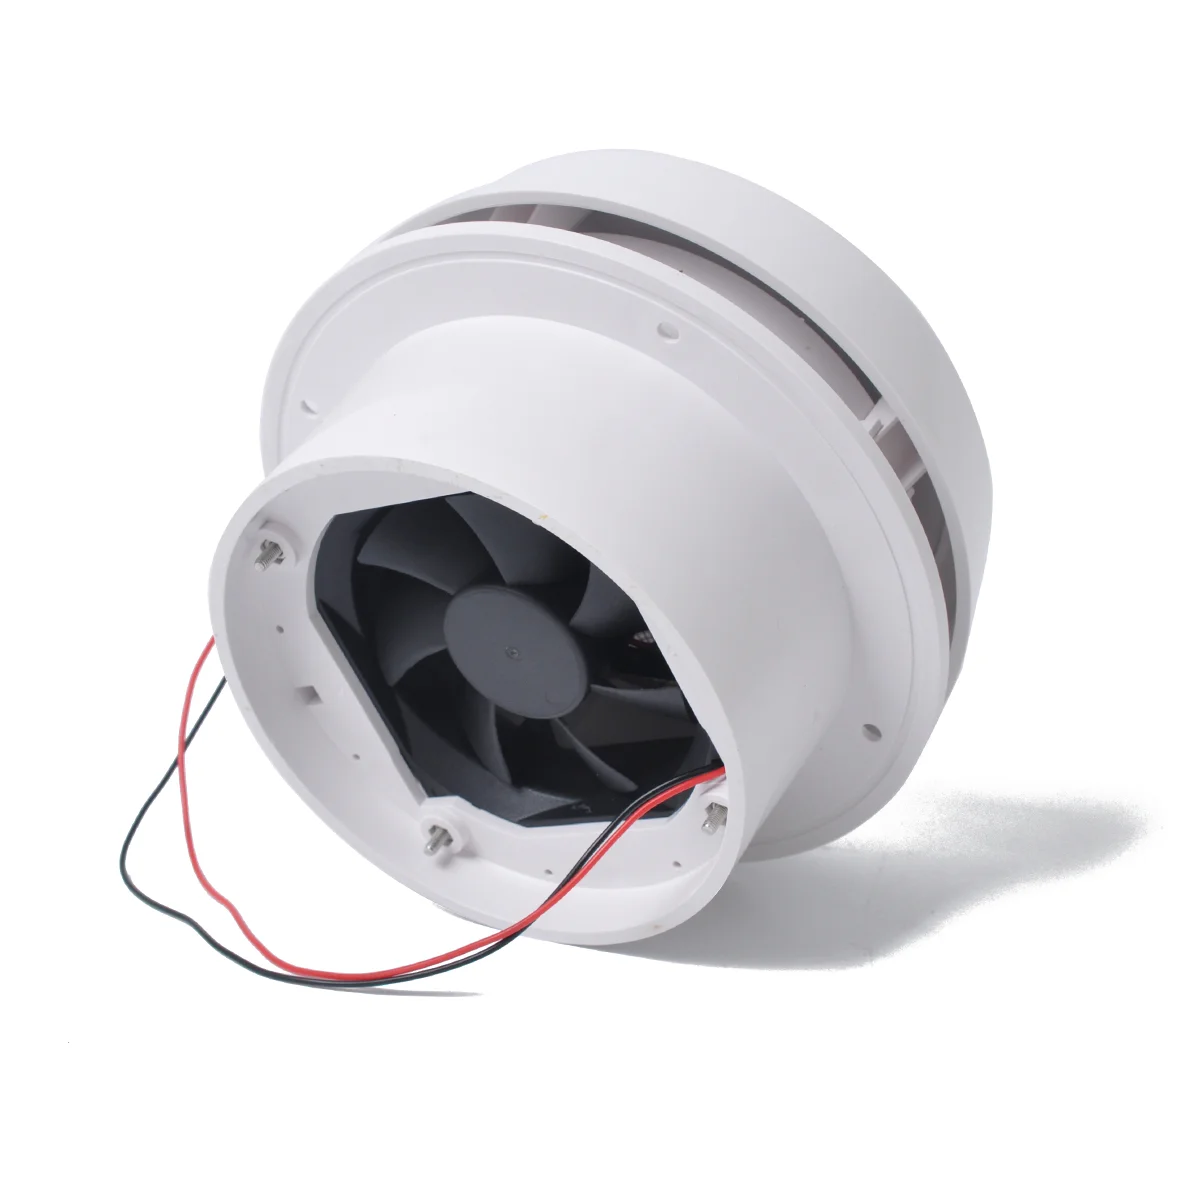 

Бесшумный вентилятор 12 В вольт для крыши RV, вентиляционный вентилятор для дома на колесах, дизайн в форме гриба, круговой прочный для Rv, коммерческого автомобиля, яхты, белый